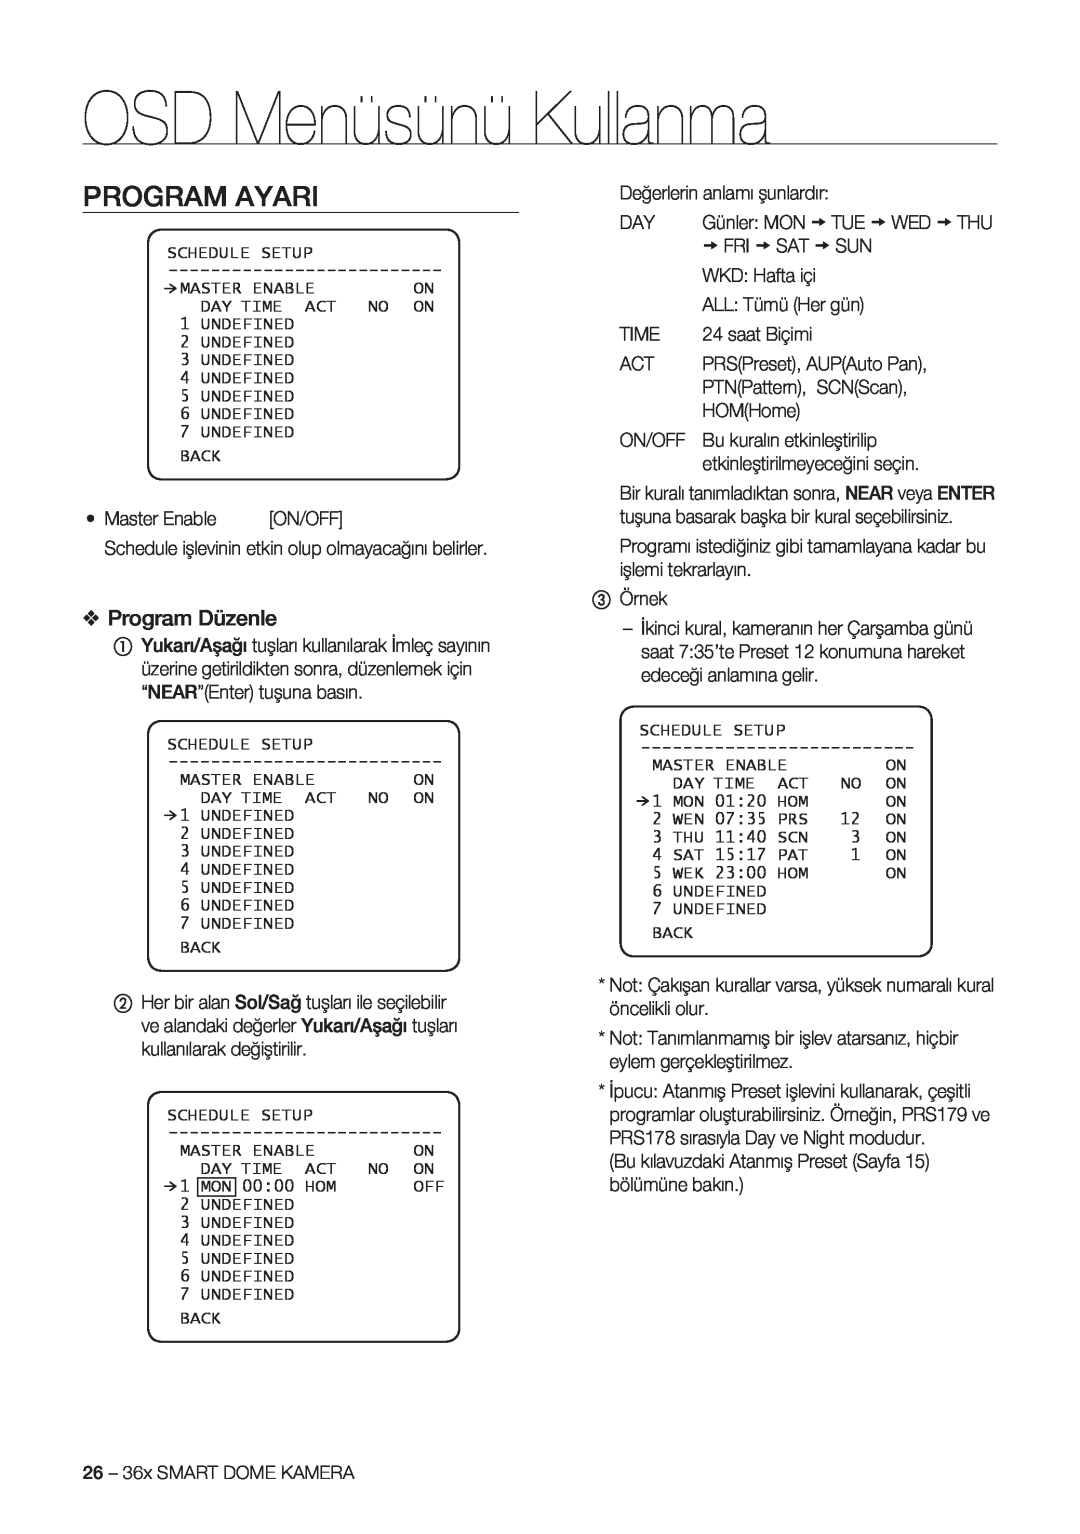 Samsung SCC-C7478P manual Program Ayari, Program Düzenle, OSD Menüsünü Kullanma 